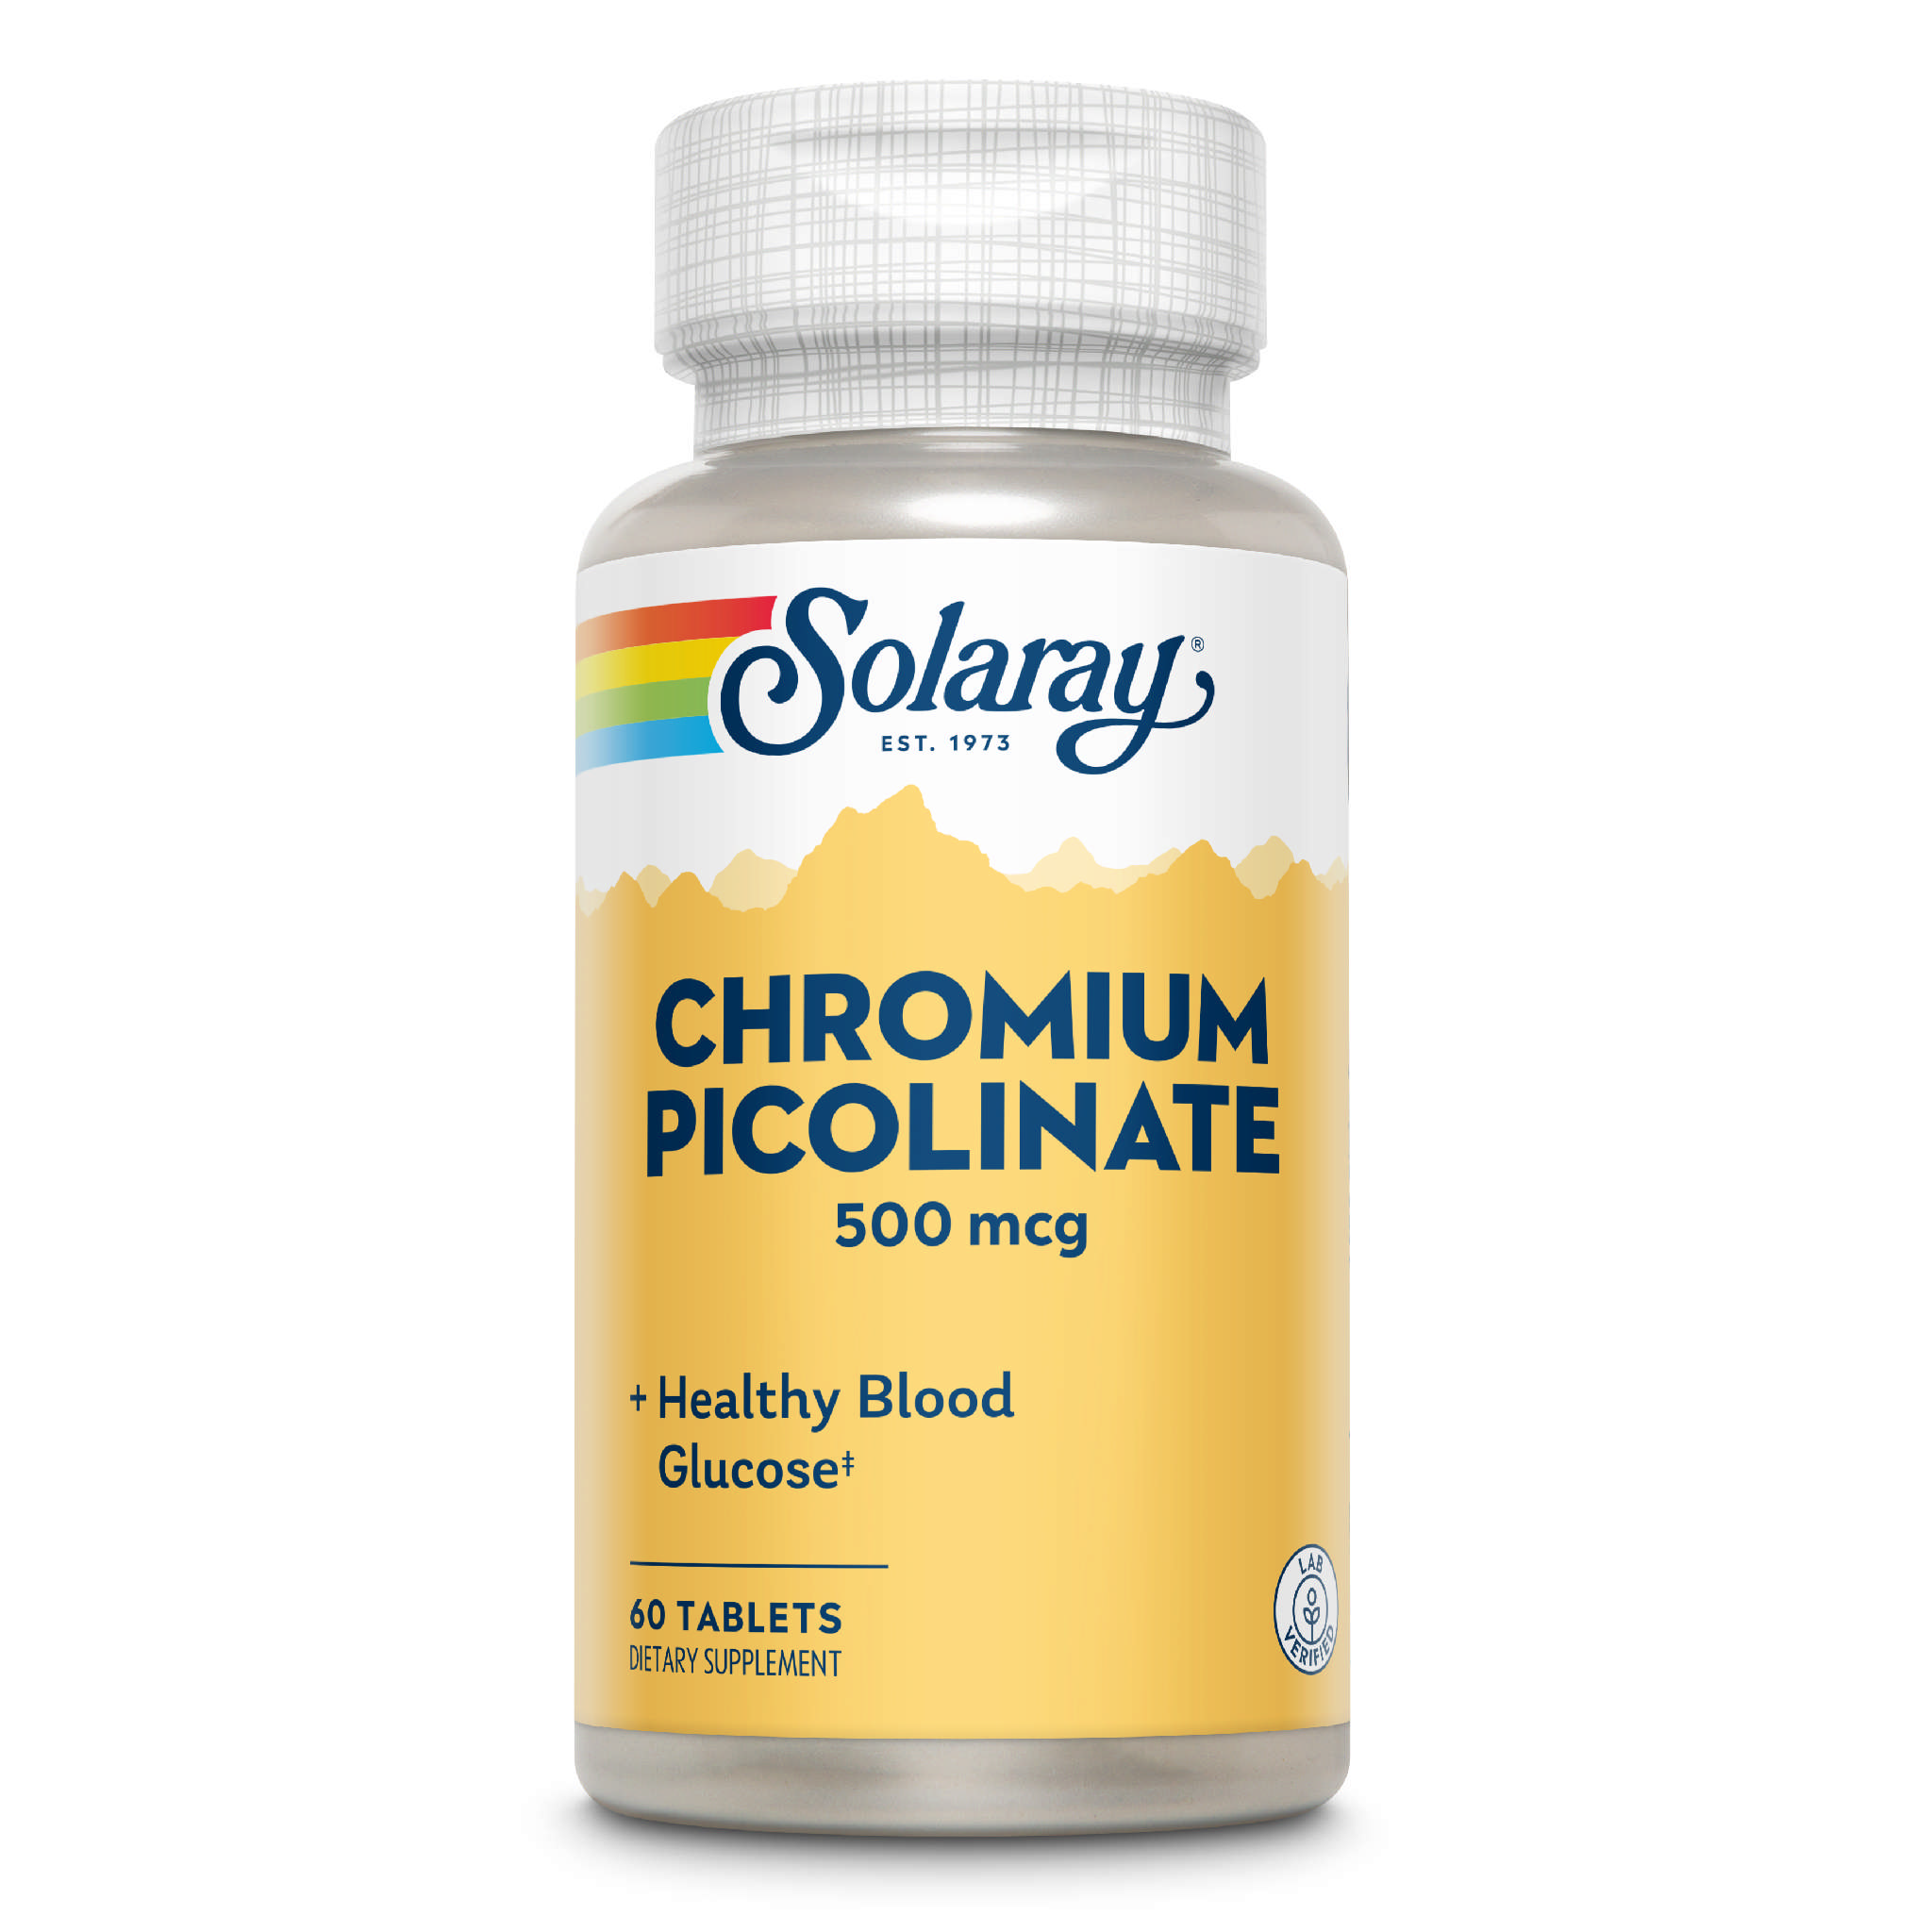 Solaray - Chromium Picolinate 500 mcg